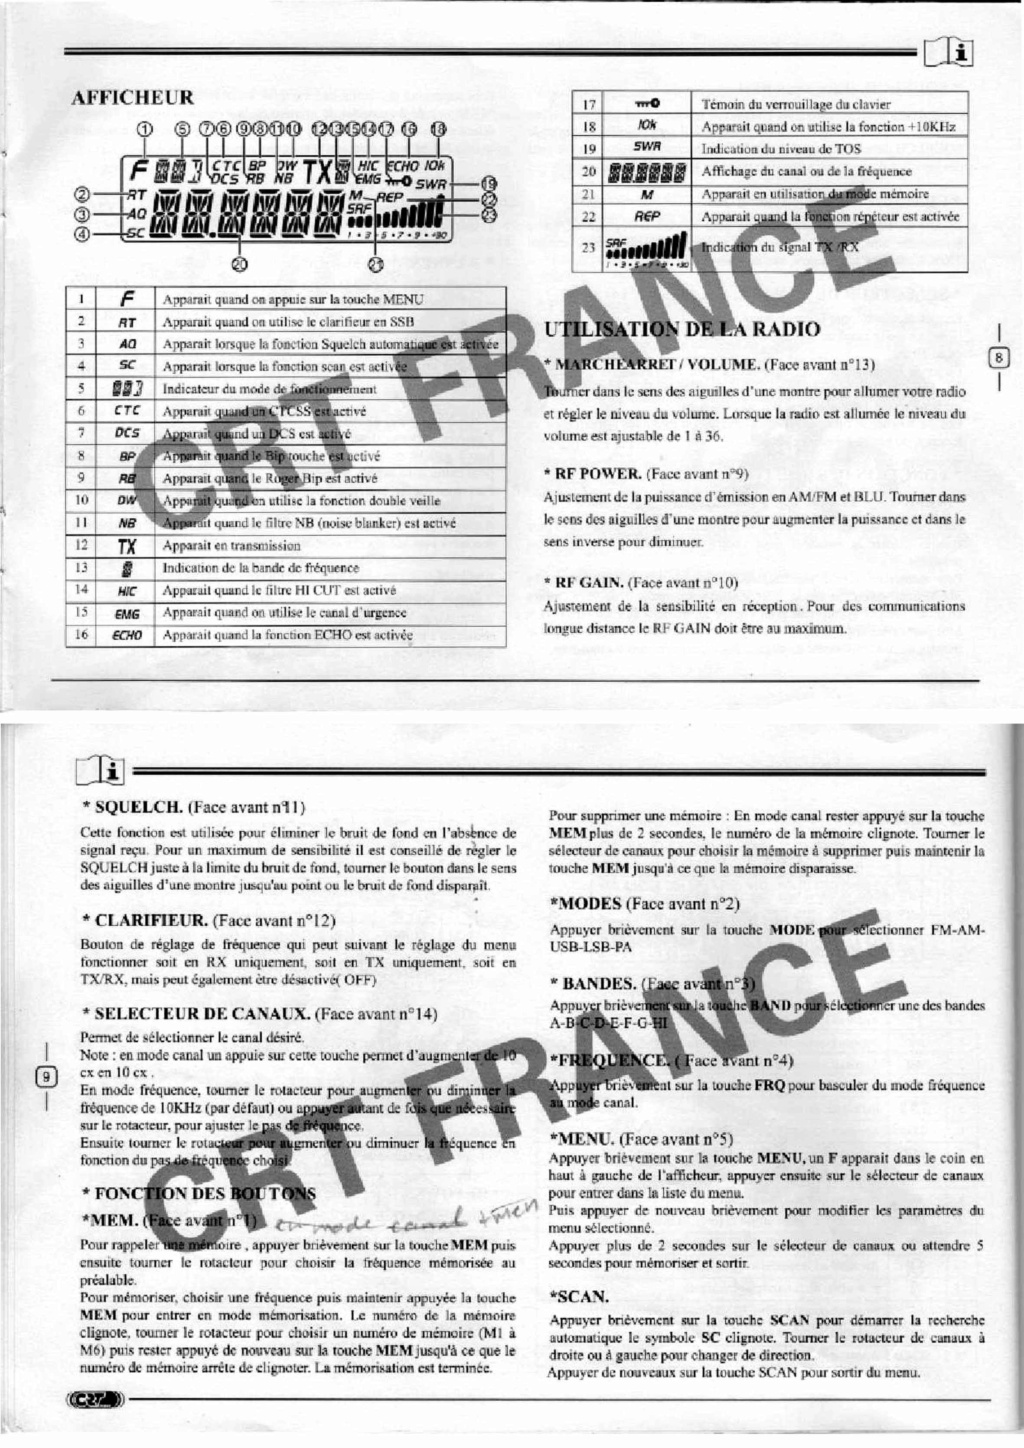 Tag manuel sur La Planète Cibi Francophone Feuill16